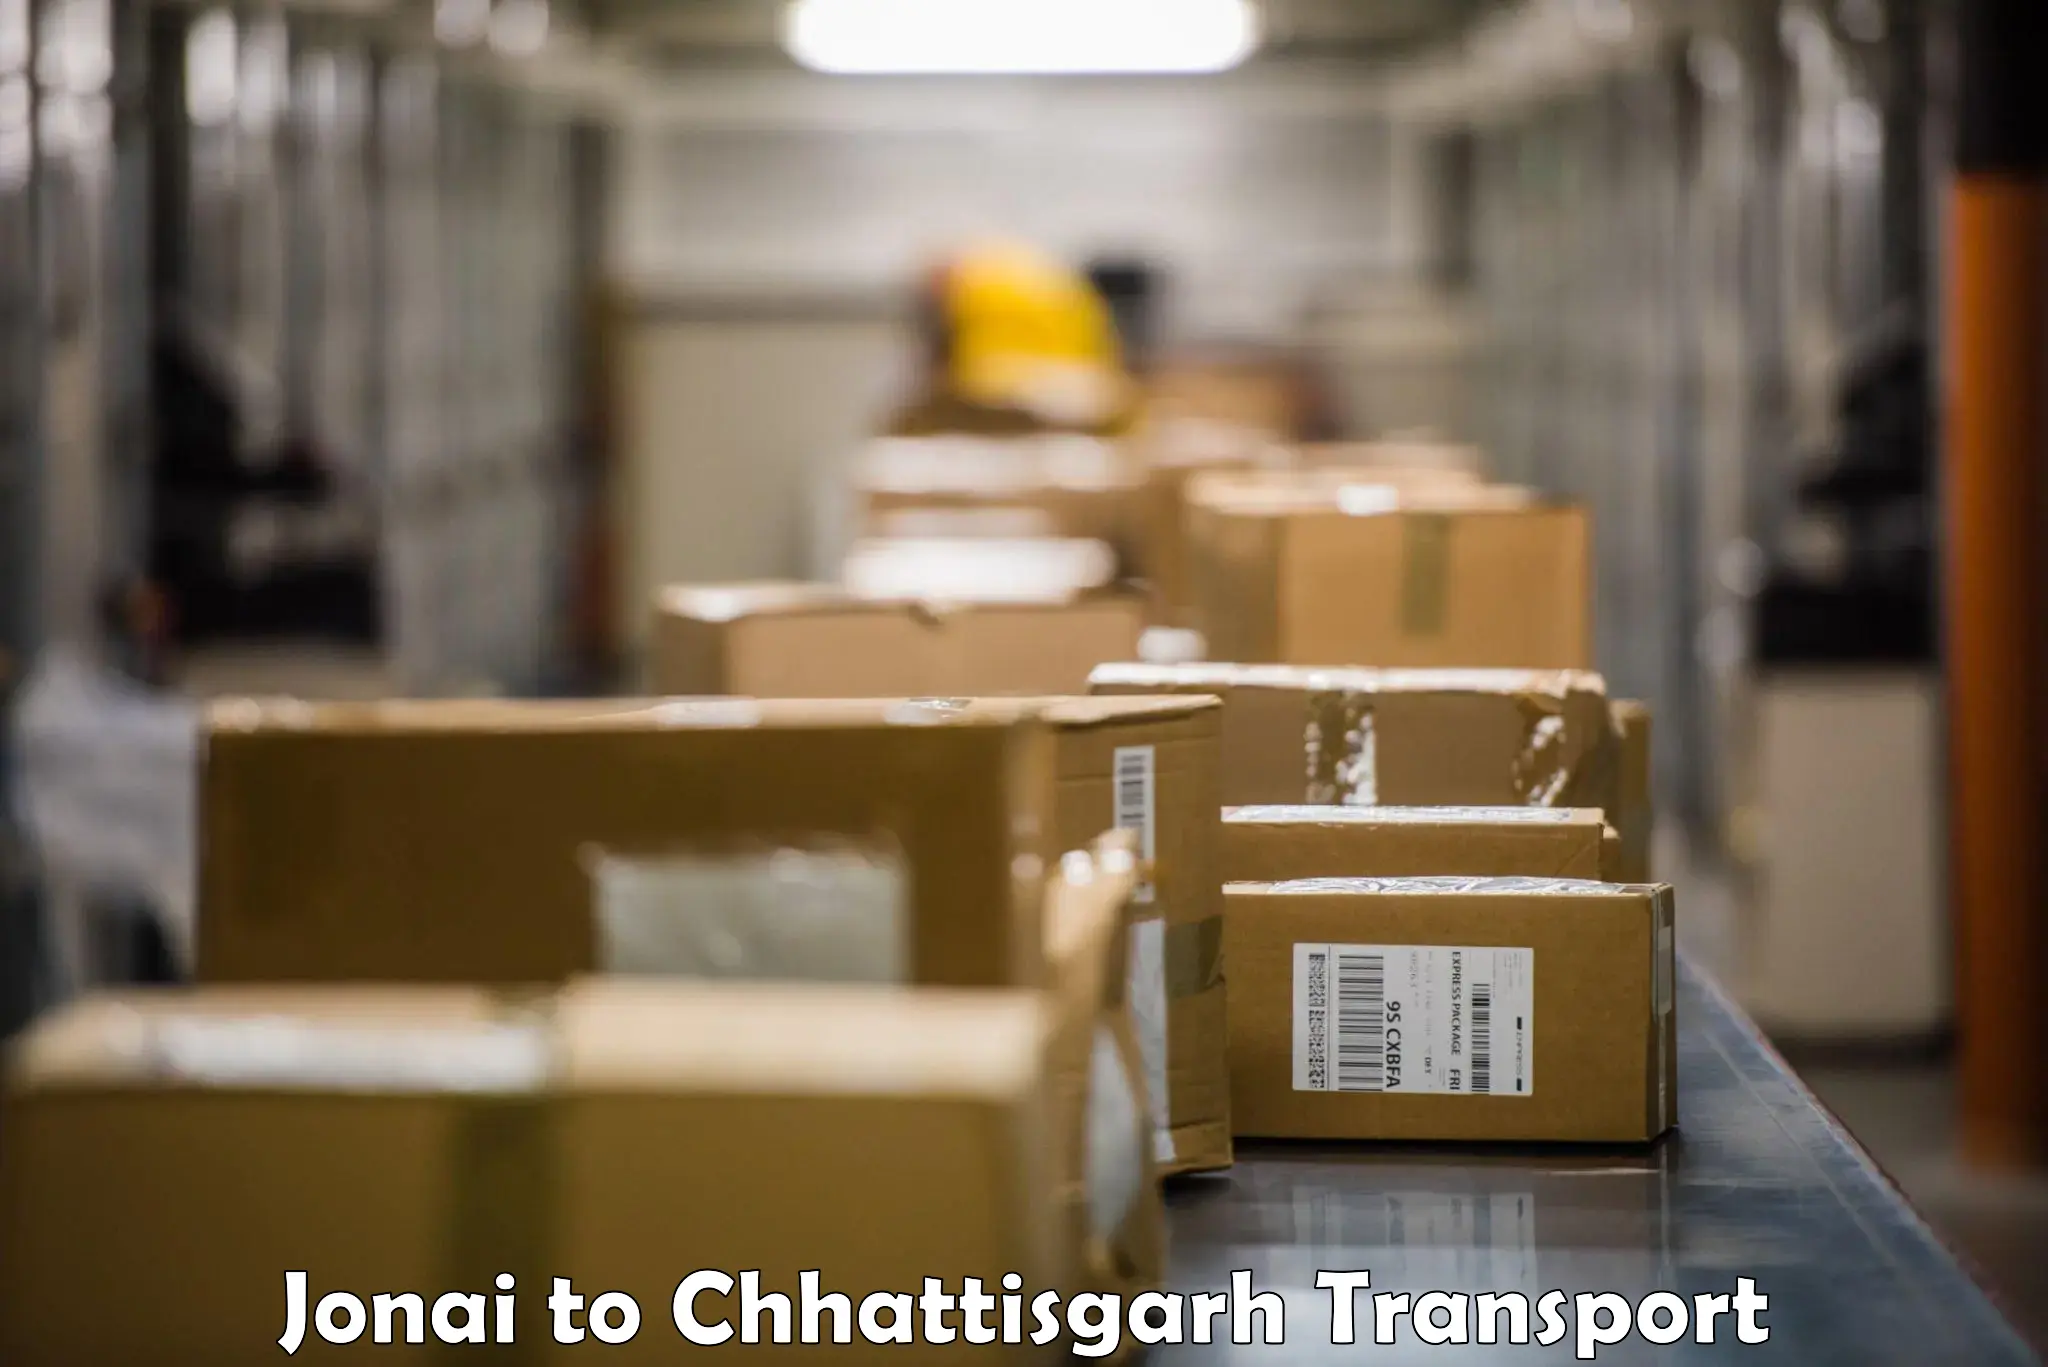 Container transport service Jonai to Chhattisgarh